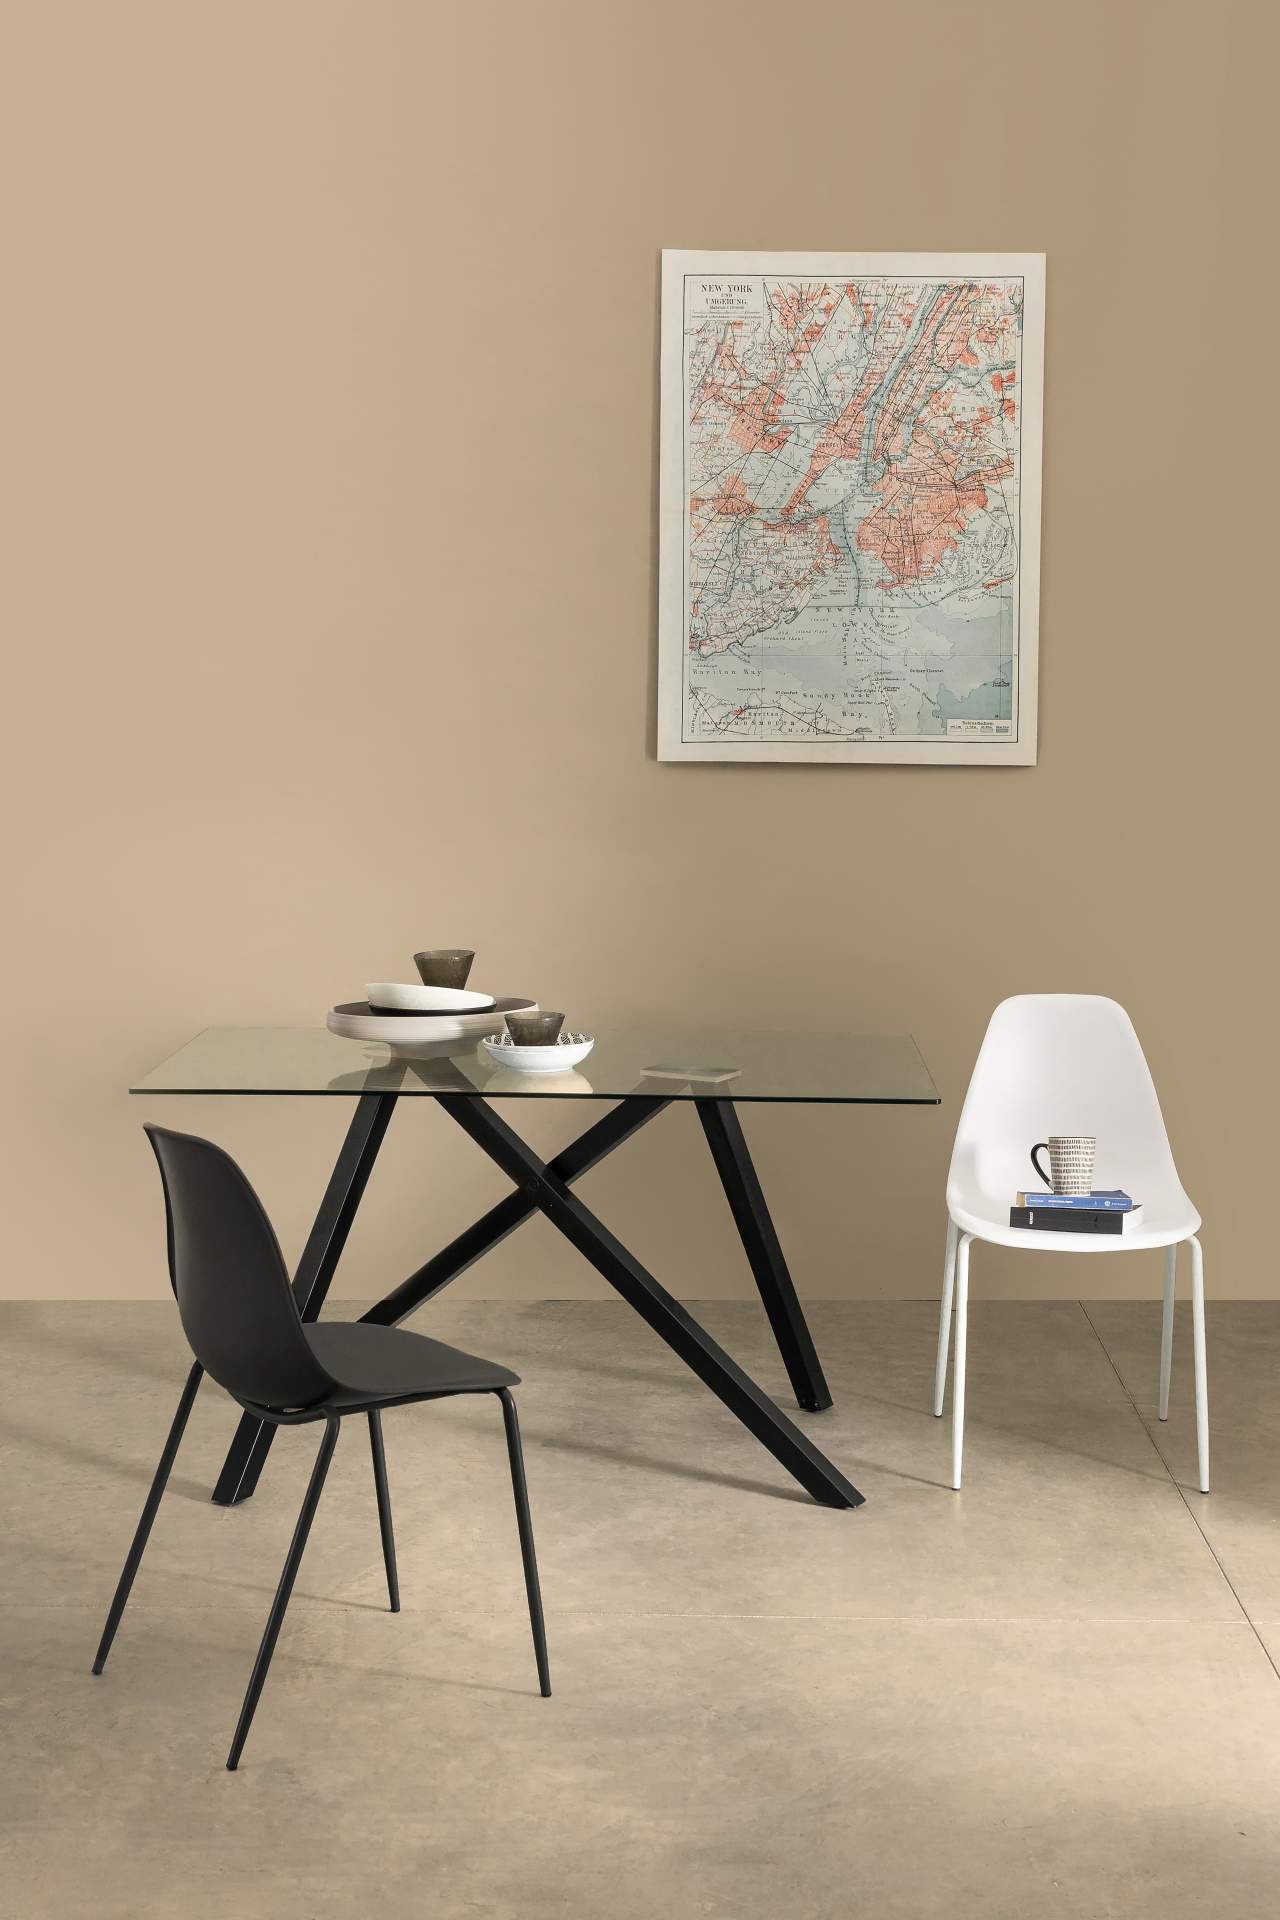 Der Stuhl Iris überzeugt mit seinem modernem Design. Gefertigt wurde der Stuhl aus Kunststoff, welcher einen weißen Farbton besitzt. Das Gestell ist aus Stahl, welches einen weißen Farbton besitzt. Die Sitzhöhe beträgt 47 cm.